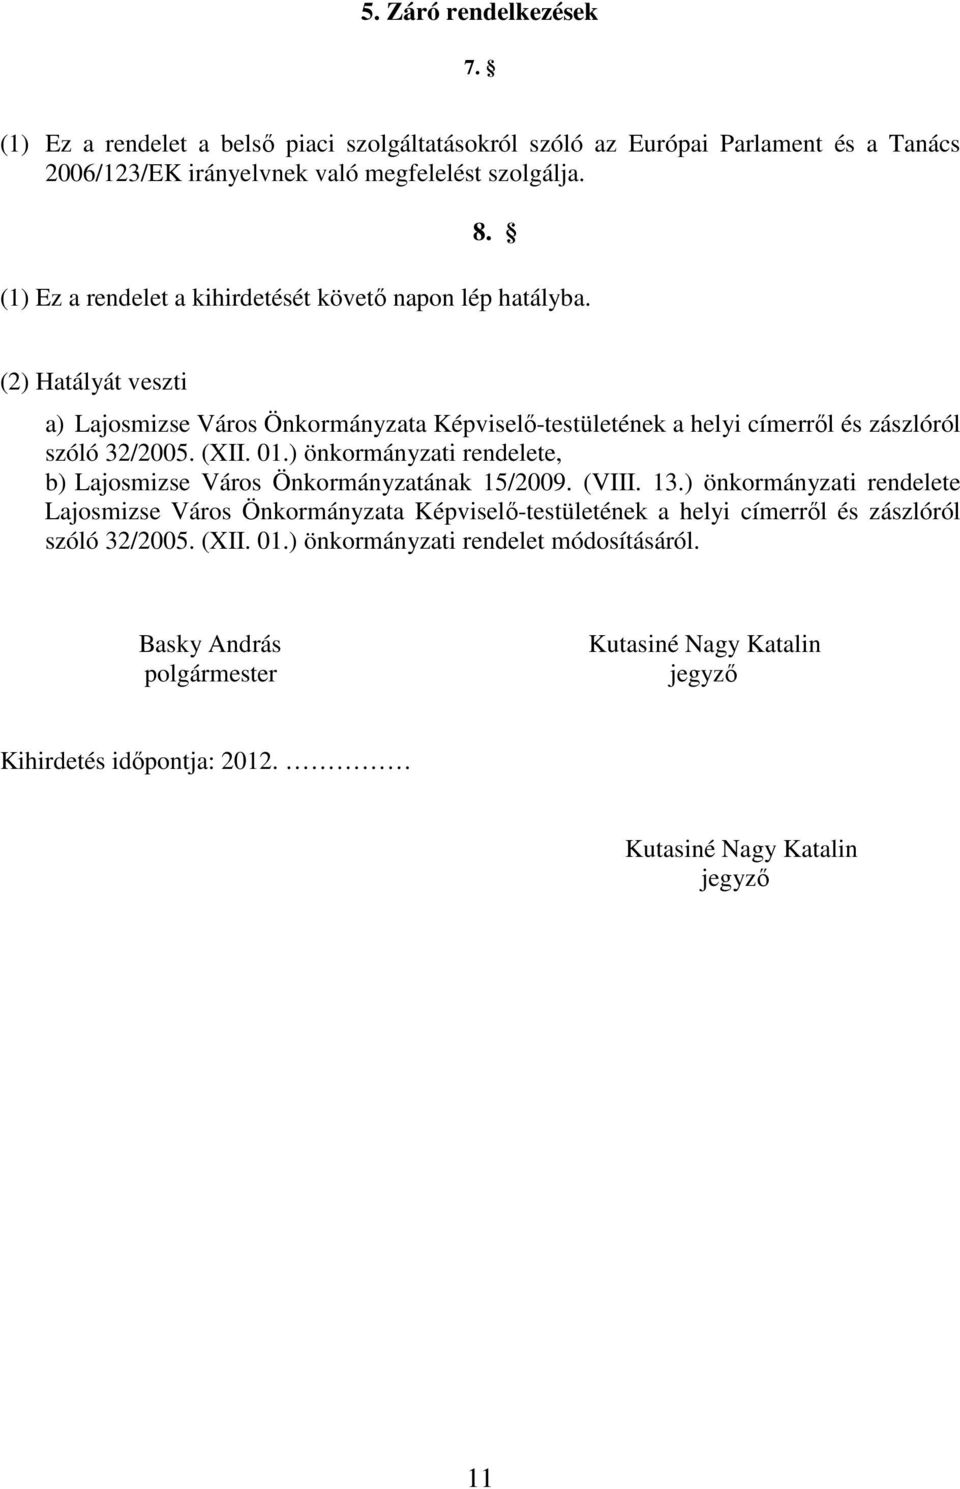 (XII. 01.) önkormányzati rendelete, b) Lajosmizse Város Önkormányzatának 15/2009. (VIII. 13.